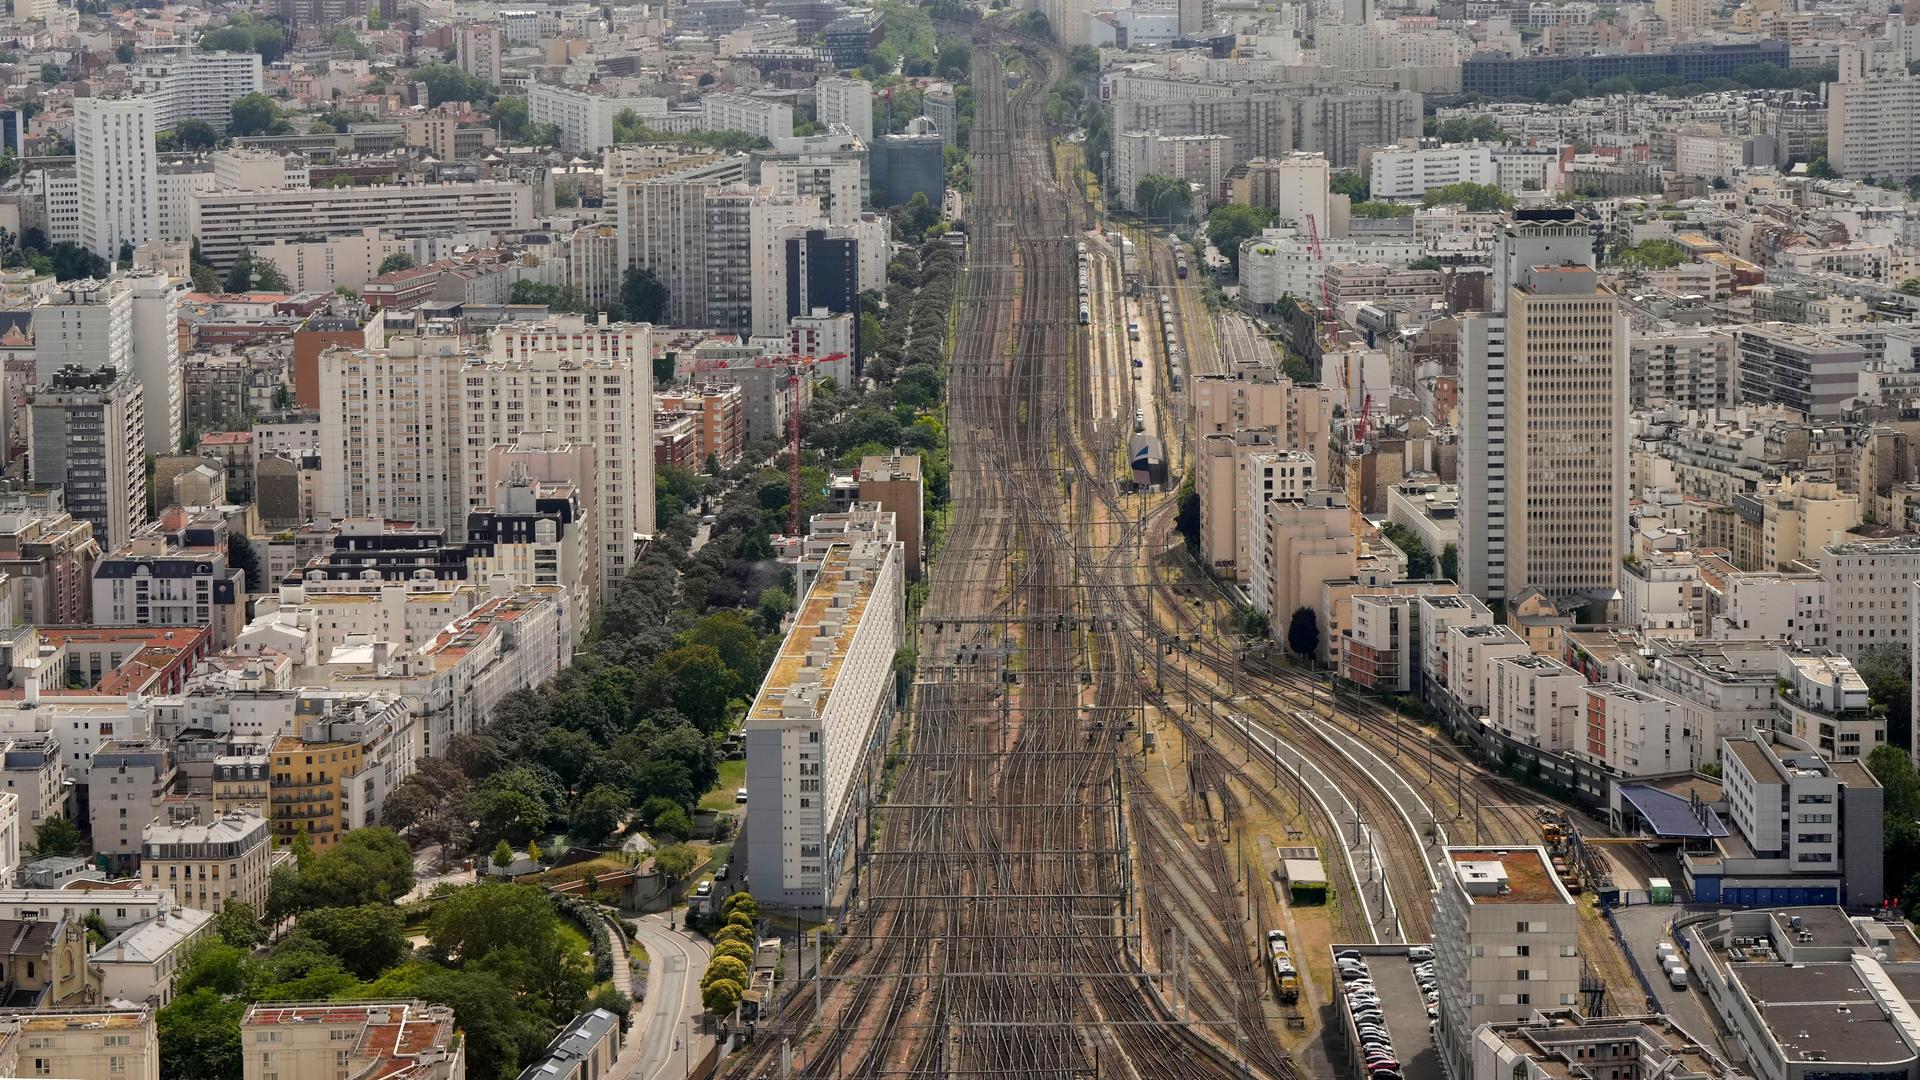 Der Bahnhof Gare Montparnasse in Paris von oben aus gesehen. Es fahren keine Züge.